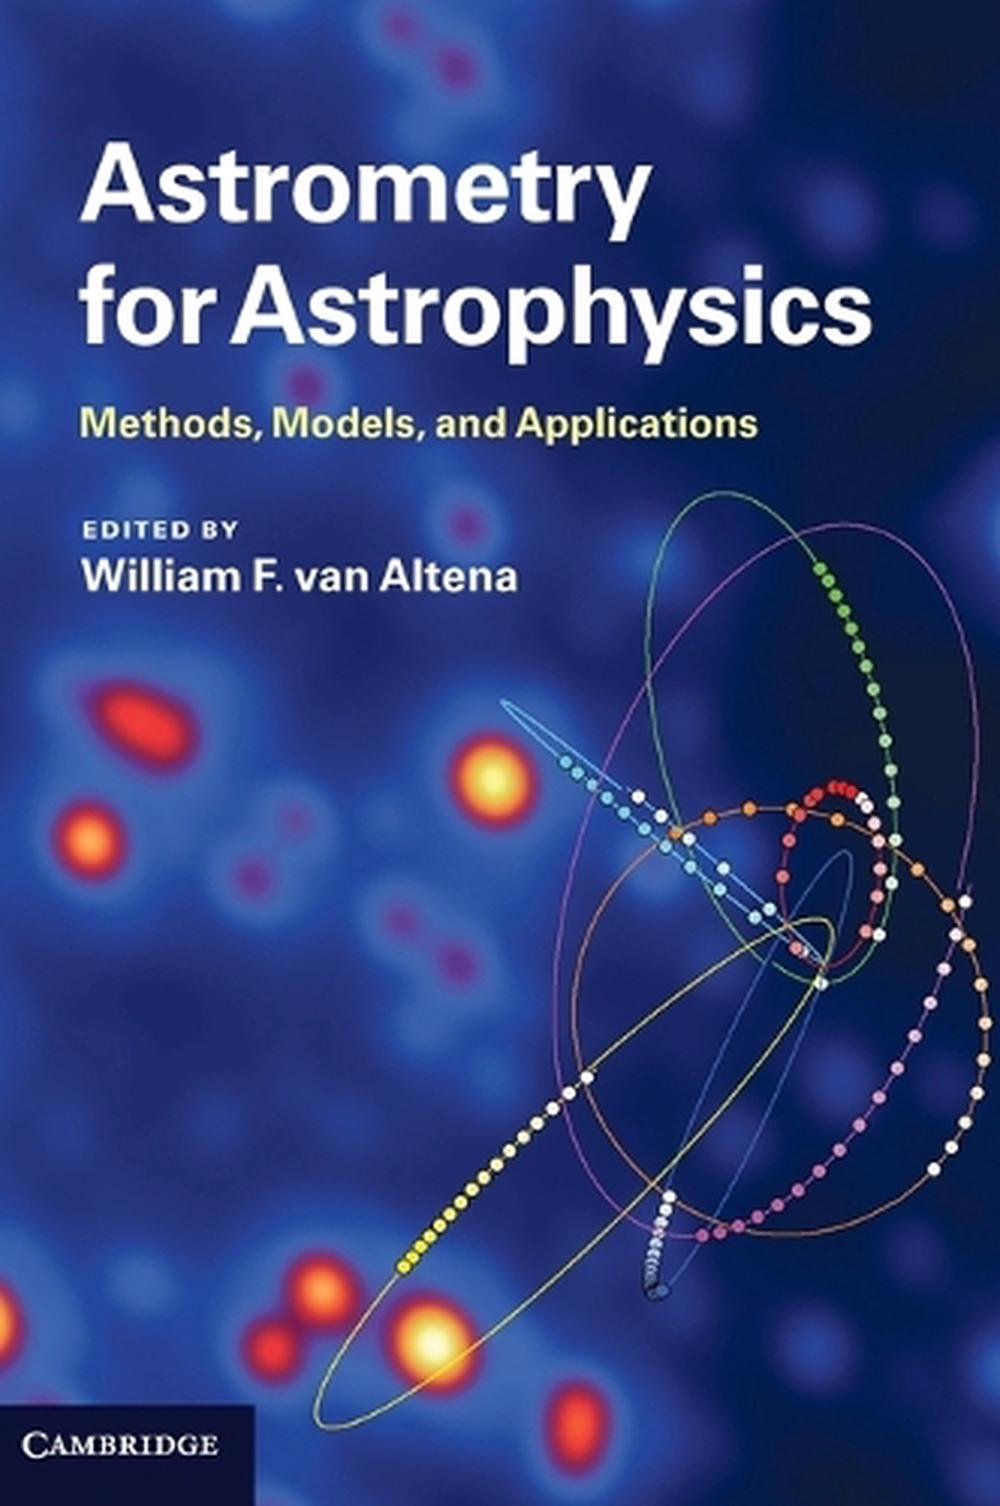 online astrometry